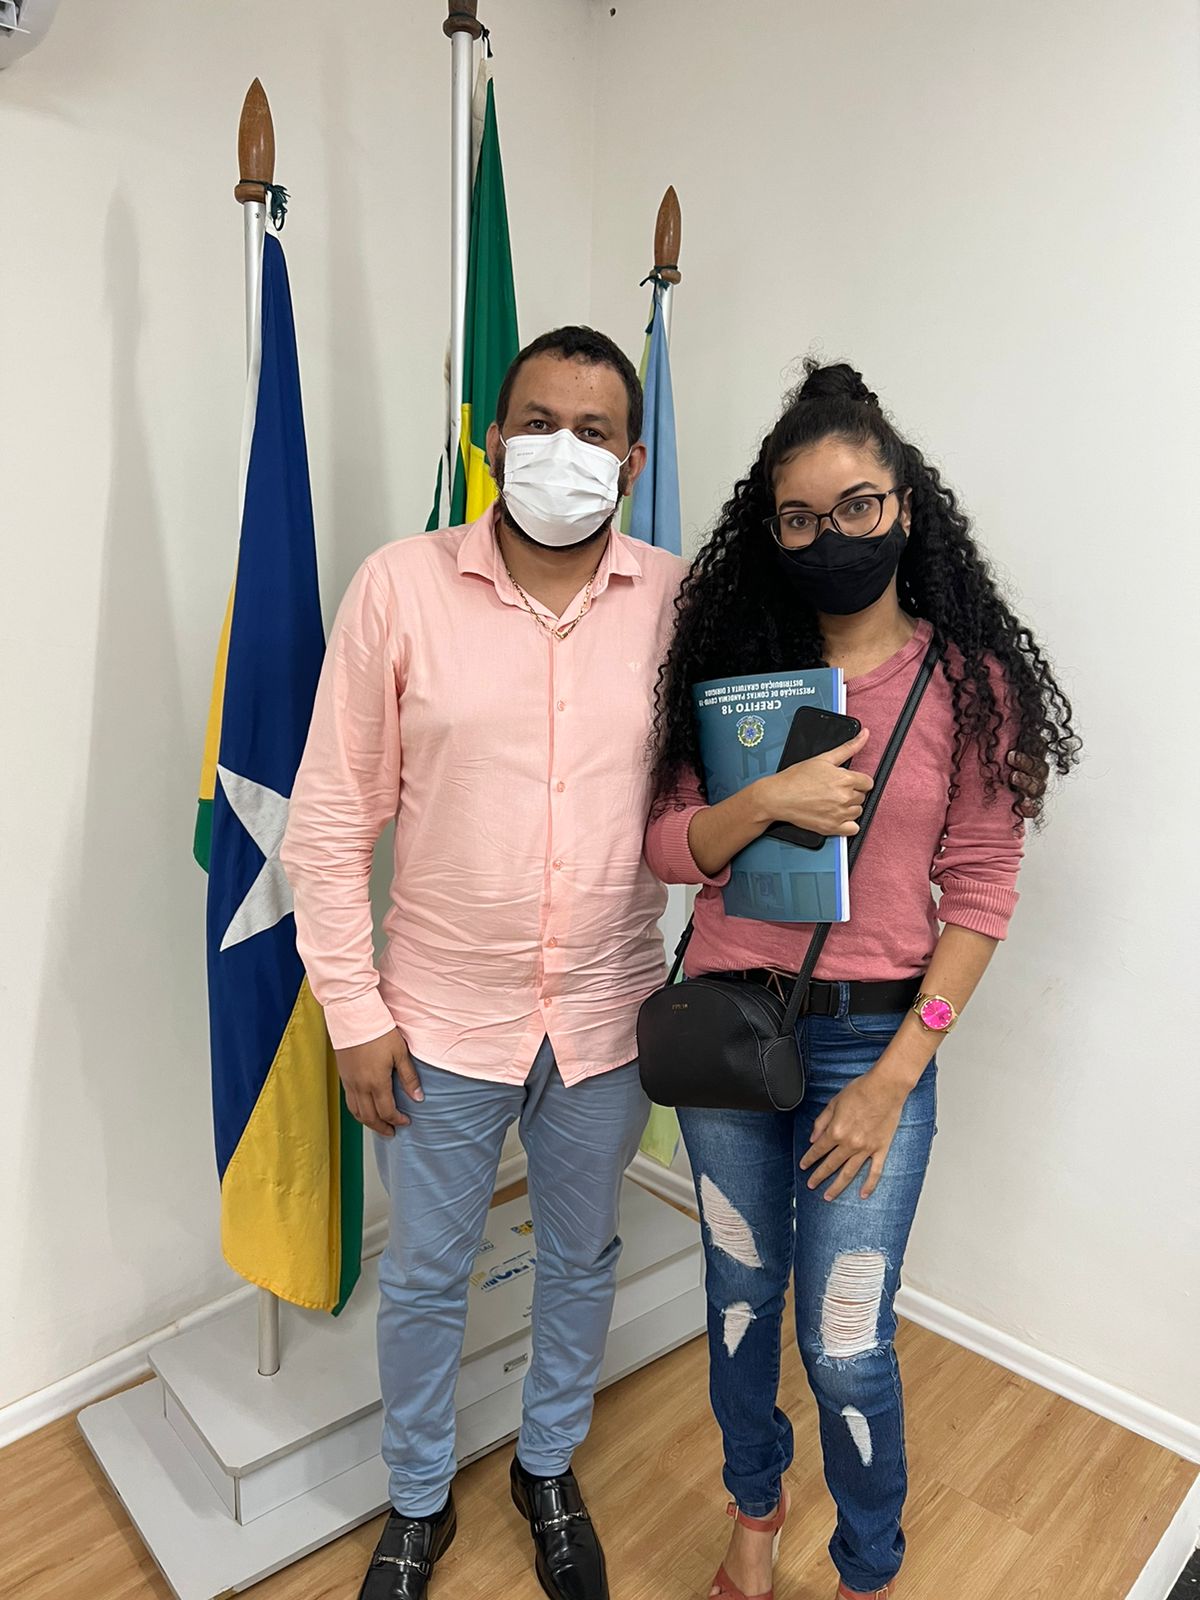 Dicas de saúde - Conselho Regional de Farmácia do Estado de Rondônia